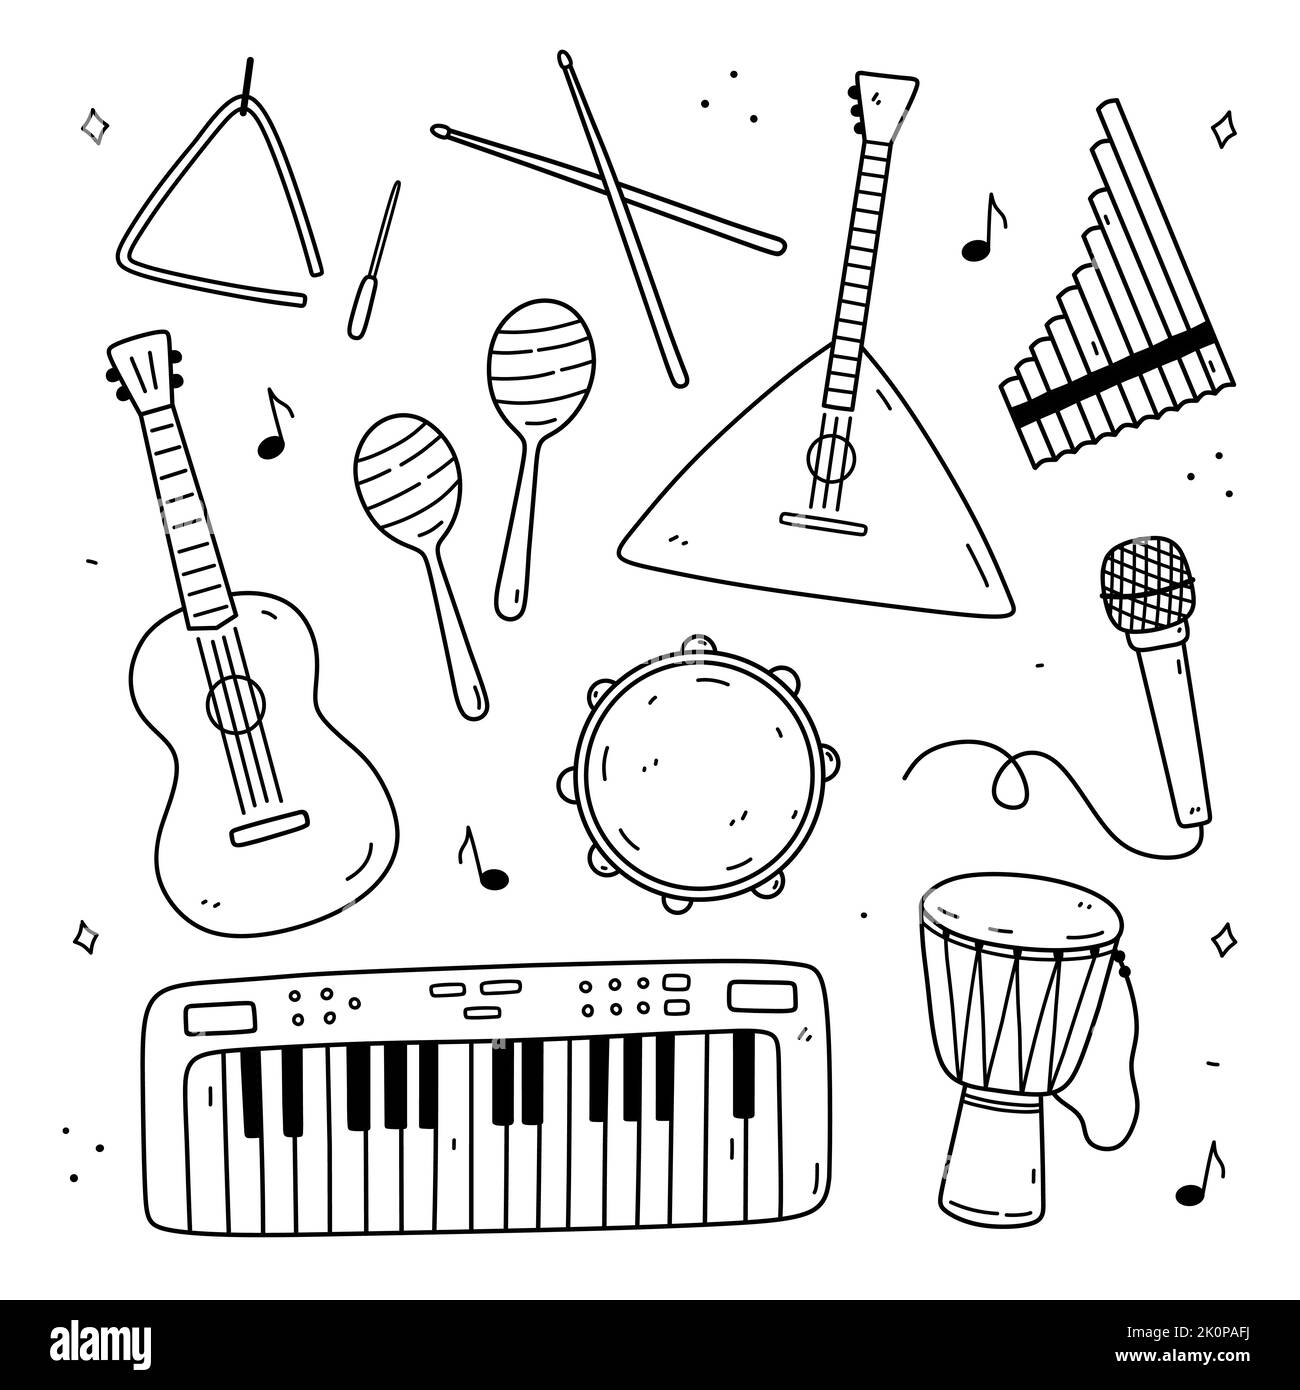 Triangle musical instrument Banque d'images noir et blanc - Alamy